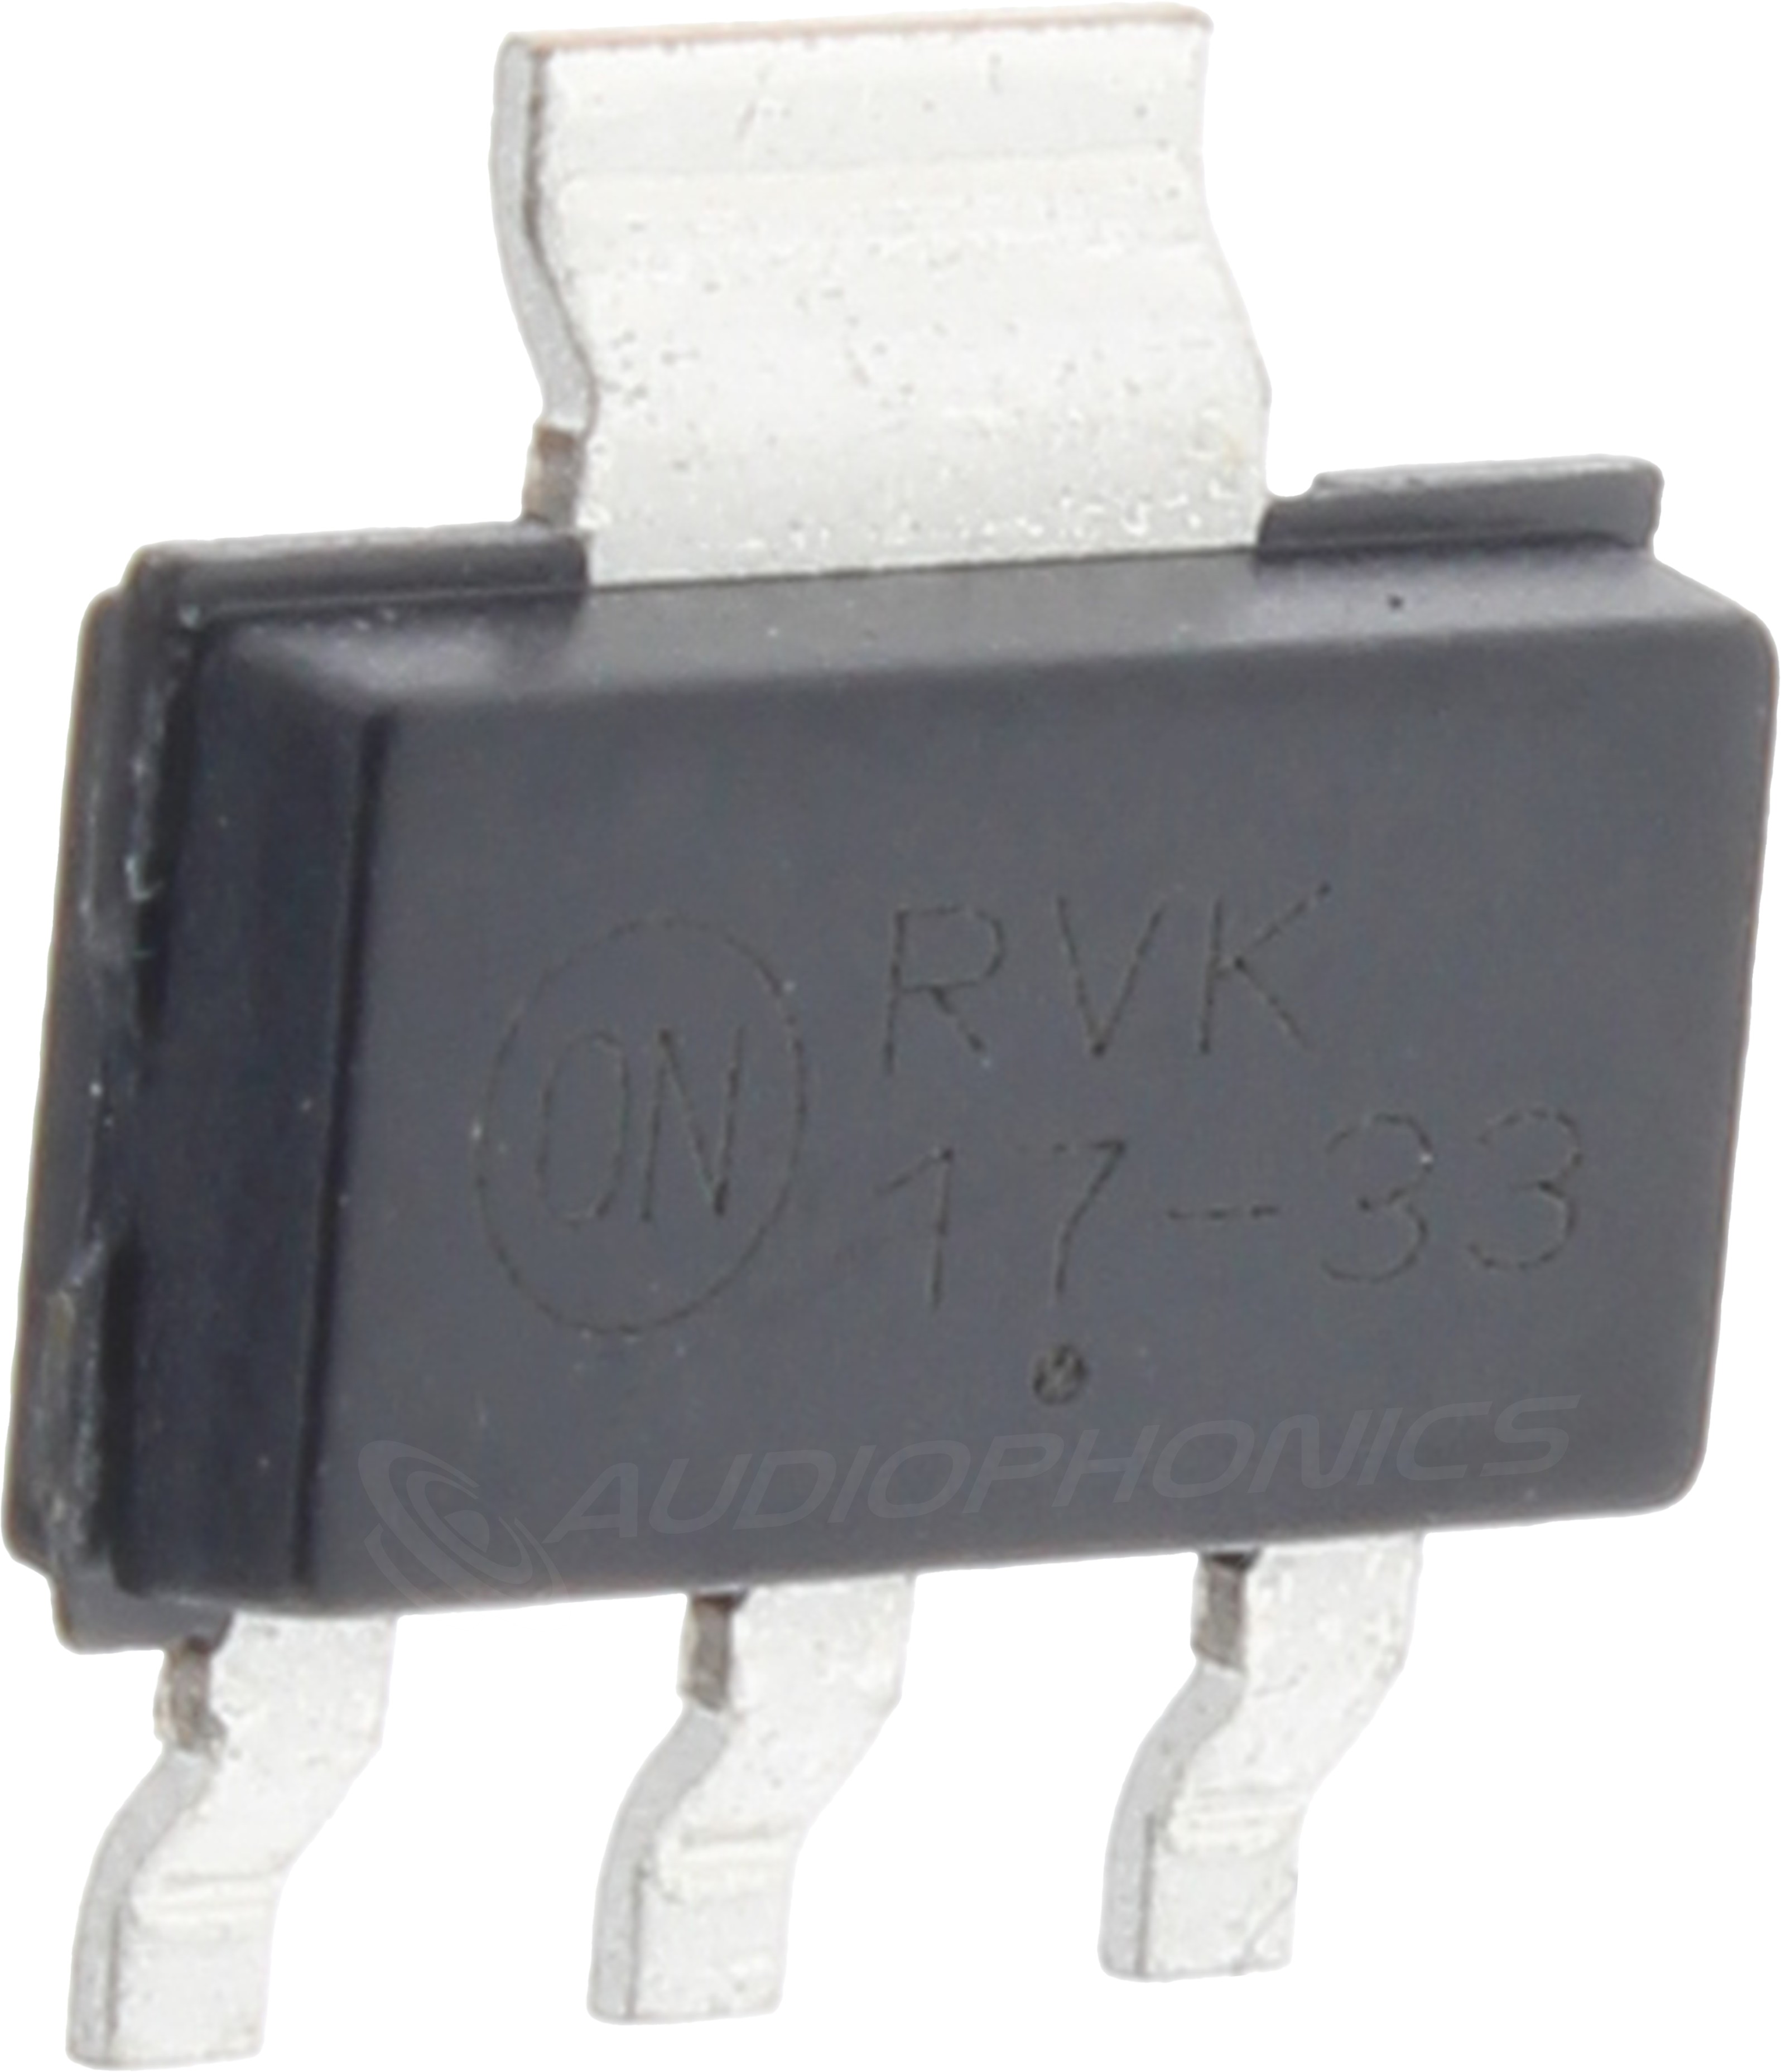 SOT-223 Voltage Regulator LDO 20V / 3.3V